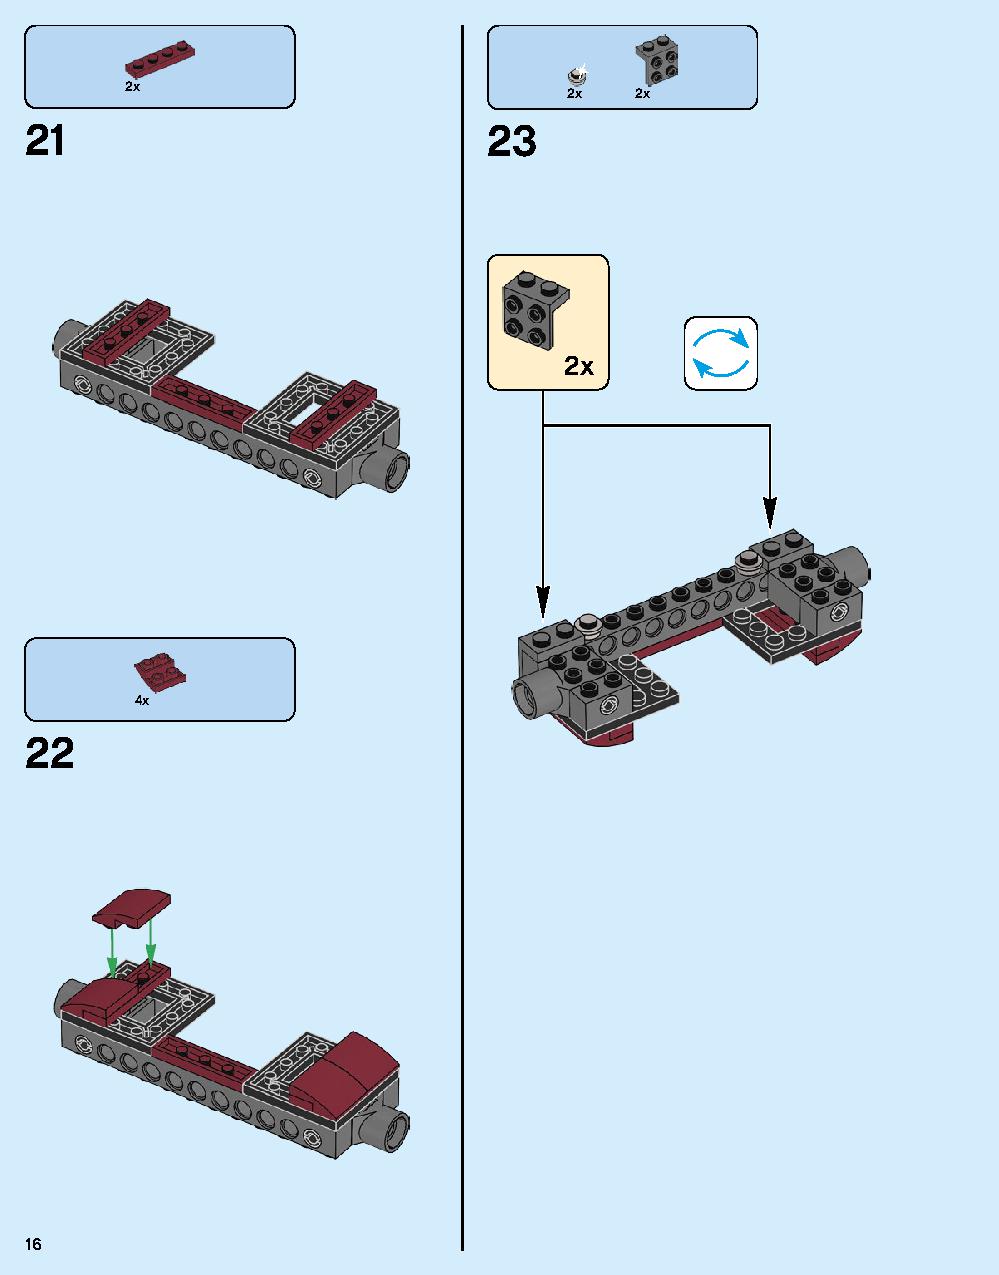 ハルクバスター：ウルトロン・エディション 76105 レゴの商品情報 レゴの説明書・組立方法 16 page